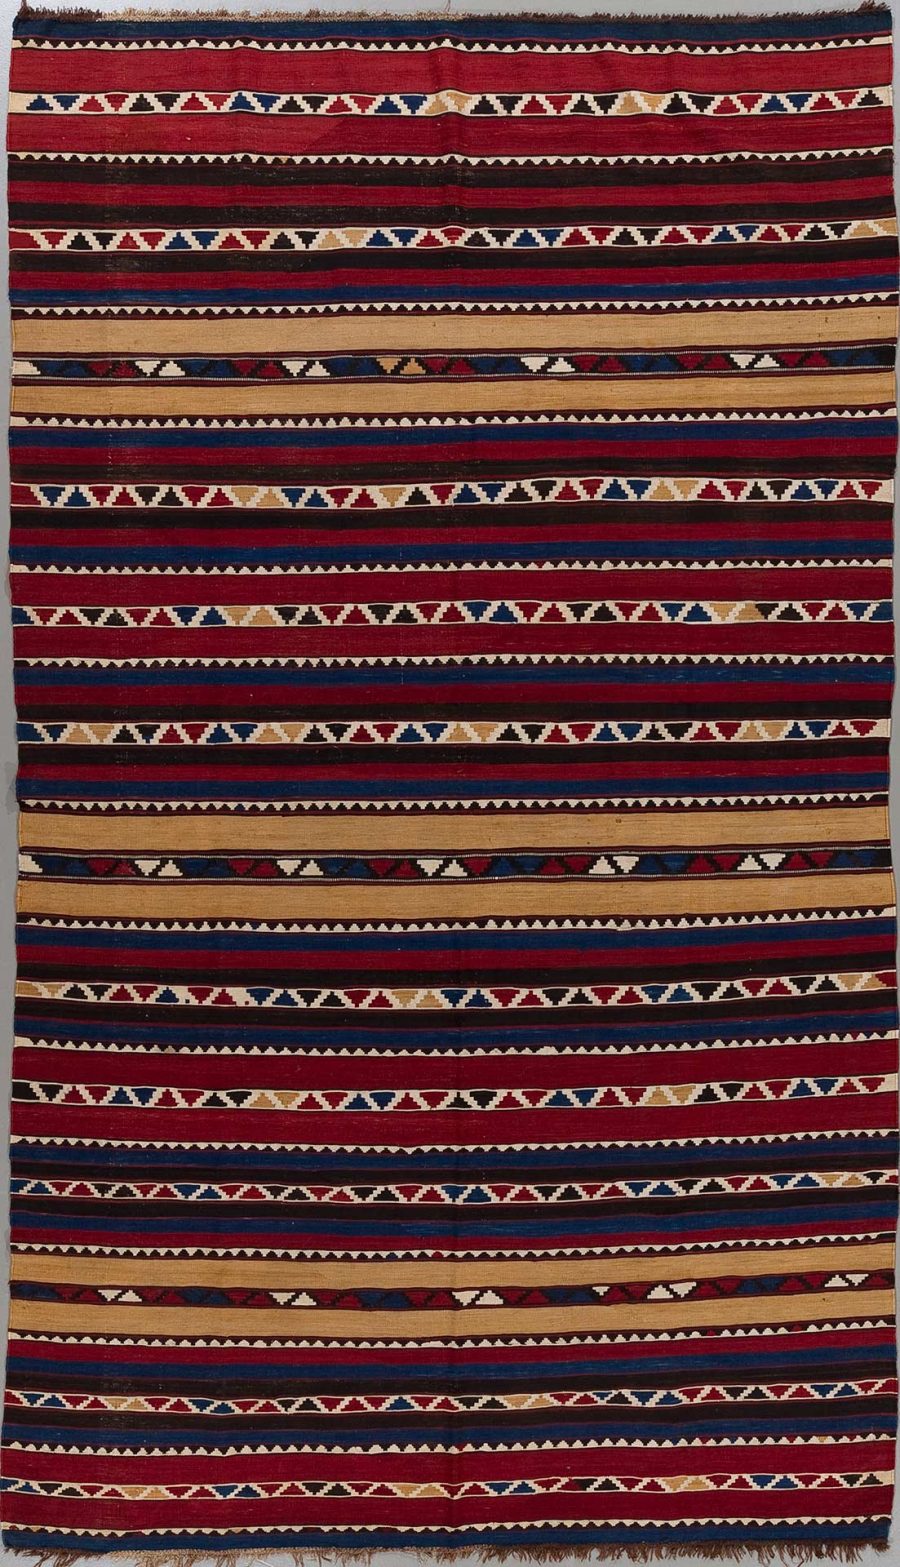 Handgewebter Teppich mit horizontalen Streifen in Rot, Blau, Beige und Weiß mit wiederkehrenden geometrischen Mustern